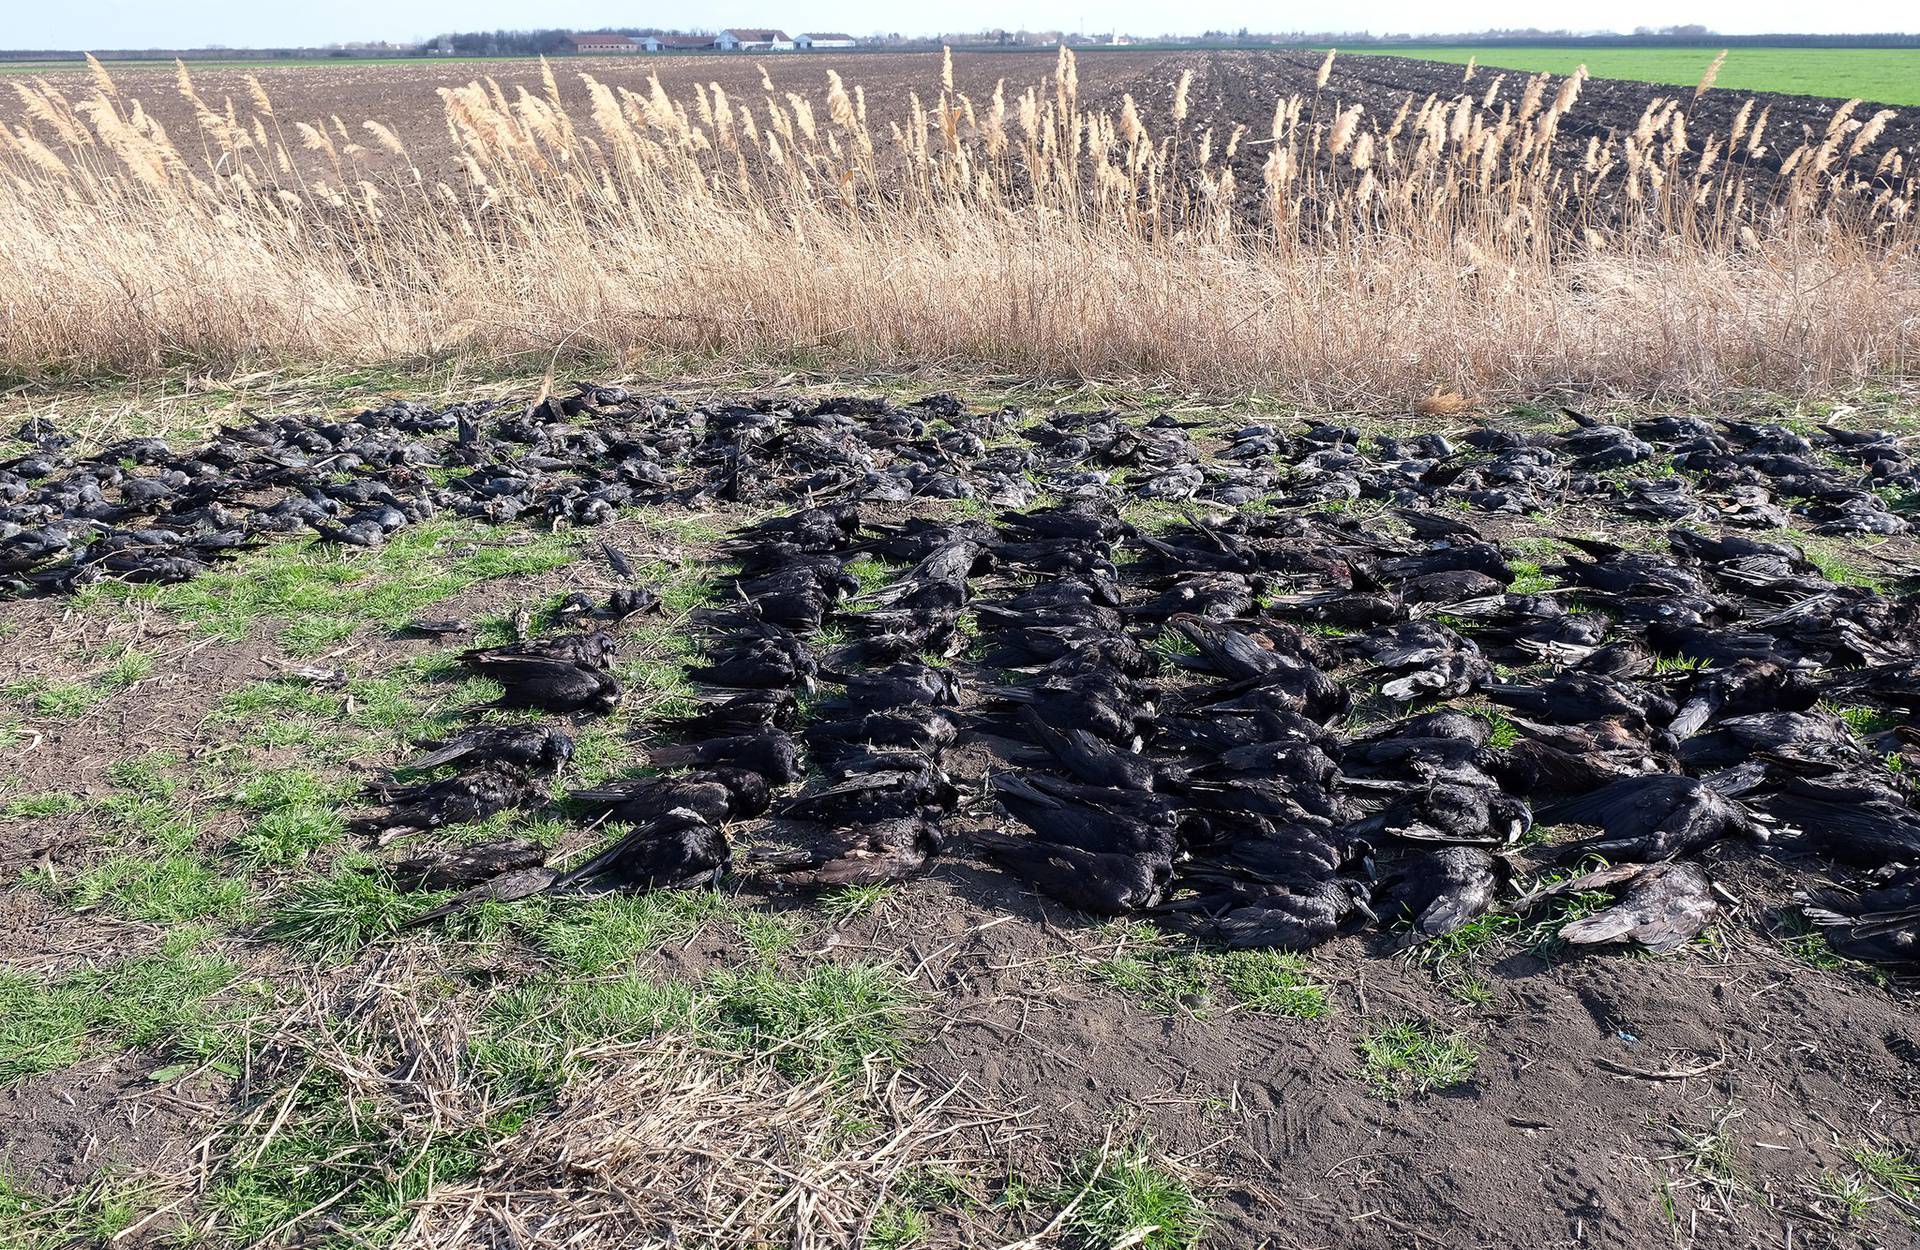 Strašne scene u Srbiji: Pronašli 800 mrtvih ptica, sumnjaju na trovanje. Zakopali su ih u jamu